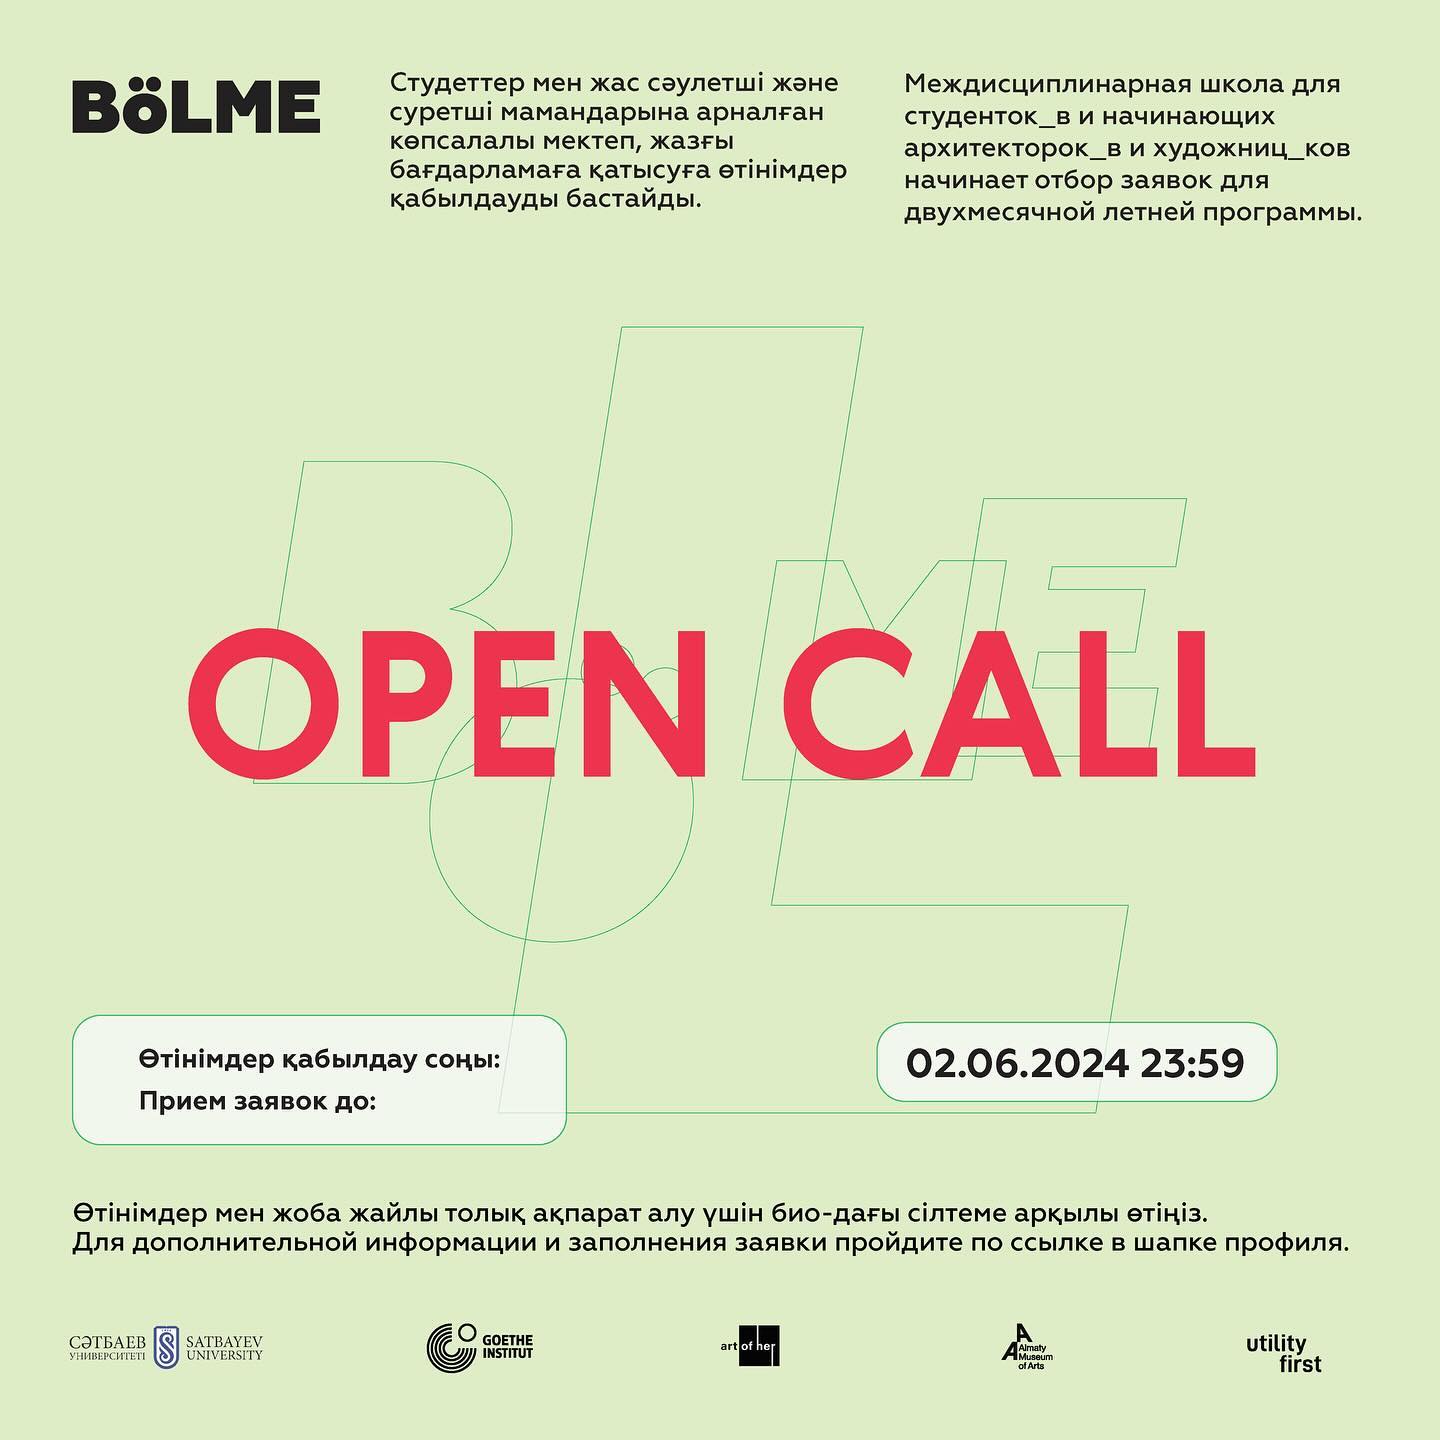 Открыт приём заявок в междисциплинарную школу Bölme